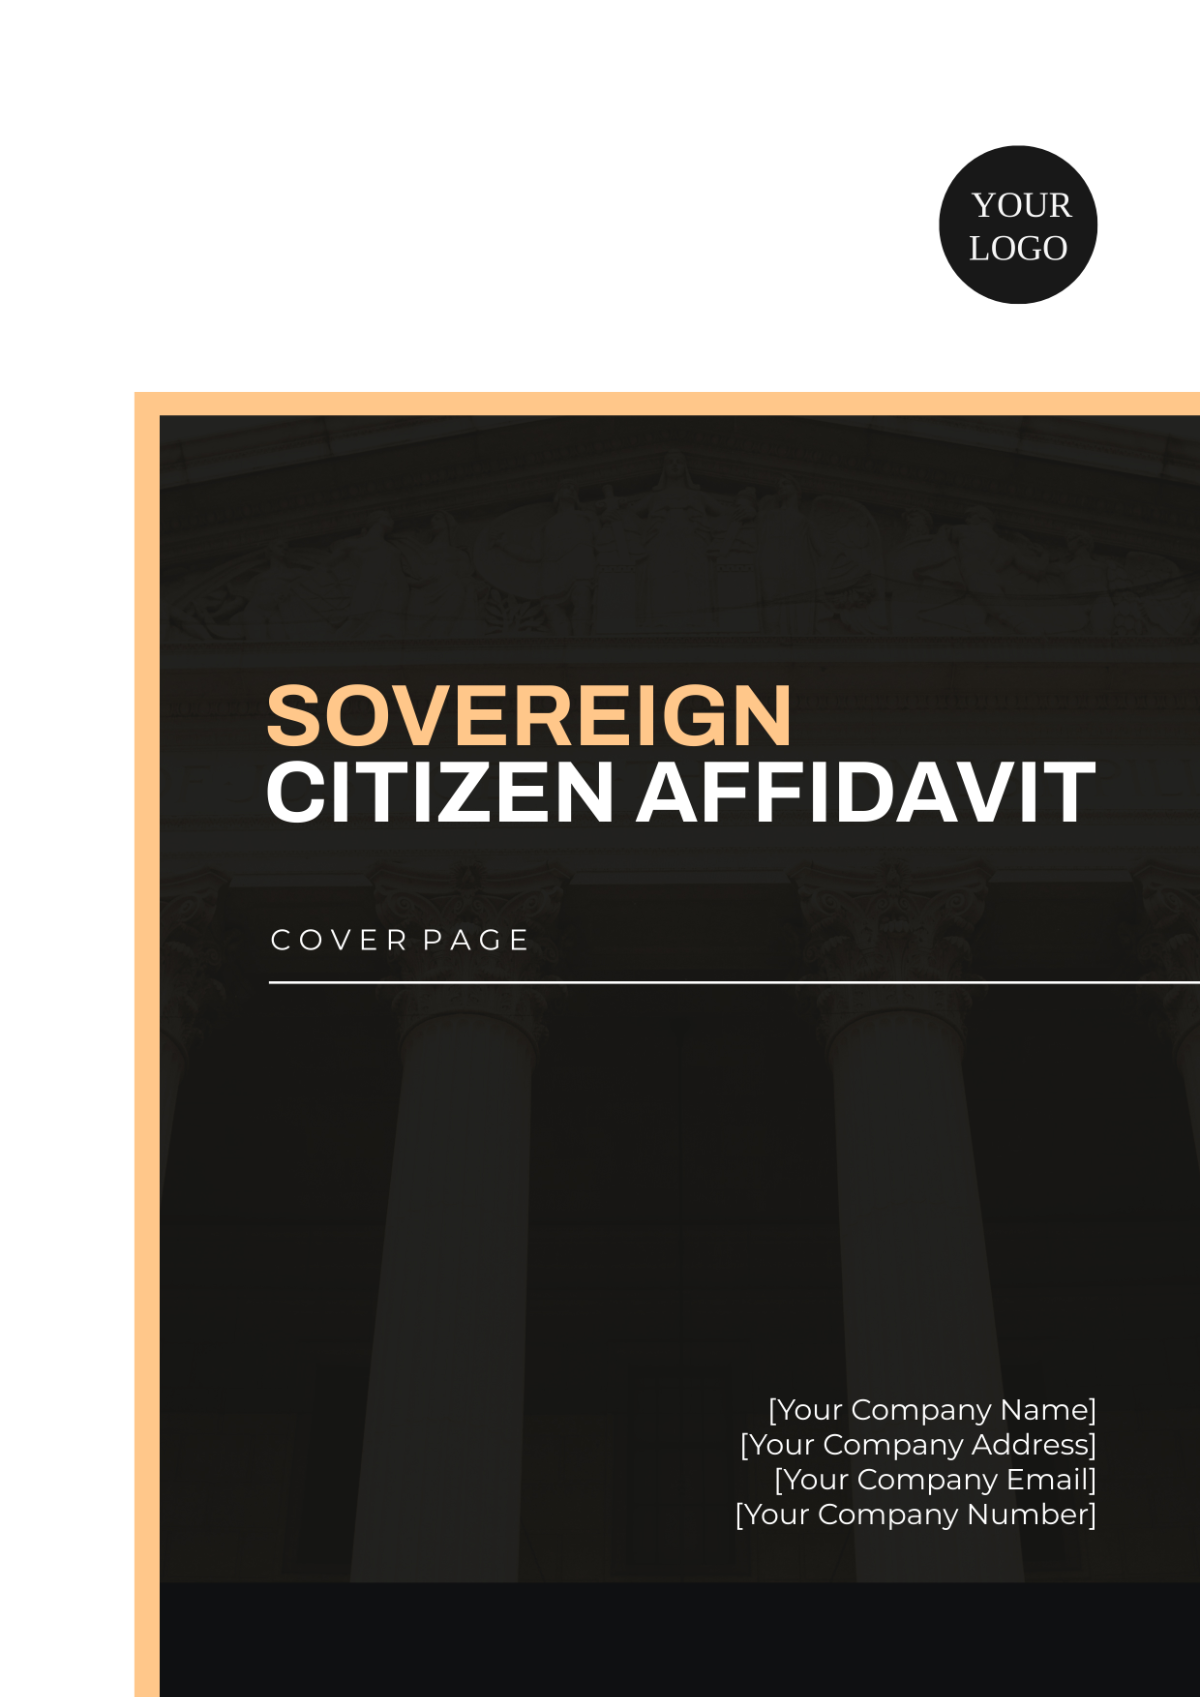 Sovereign Citizen Affidavit Cover Page